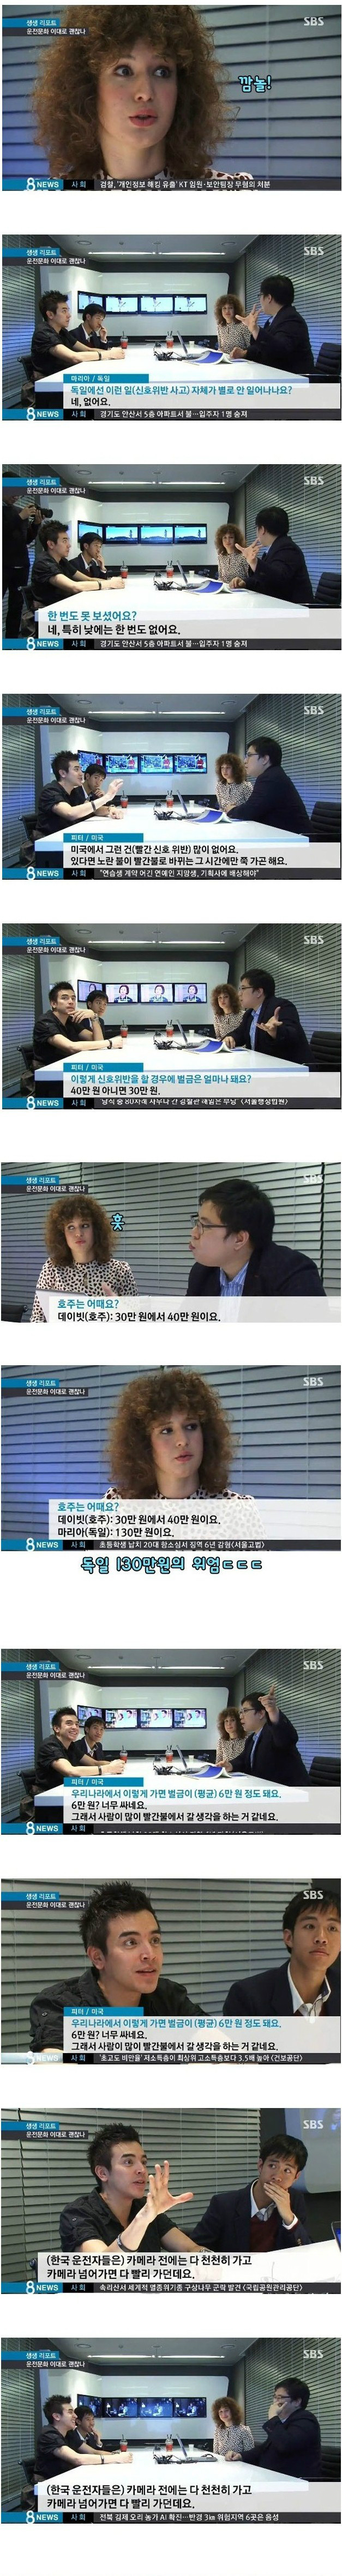 한국 운전문화를 접한 외국인들의 반응